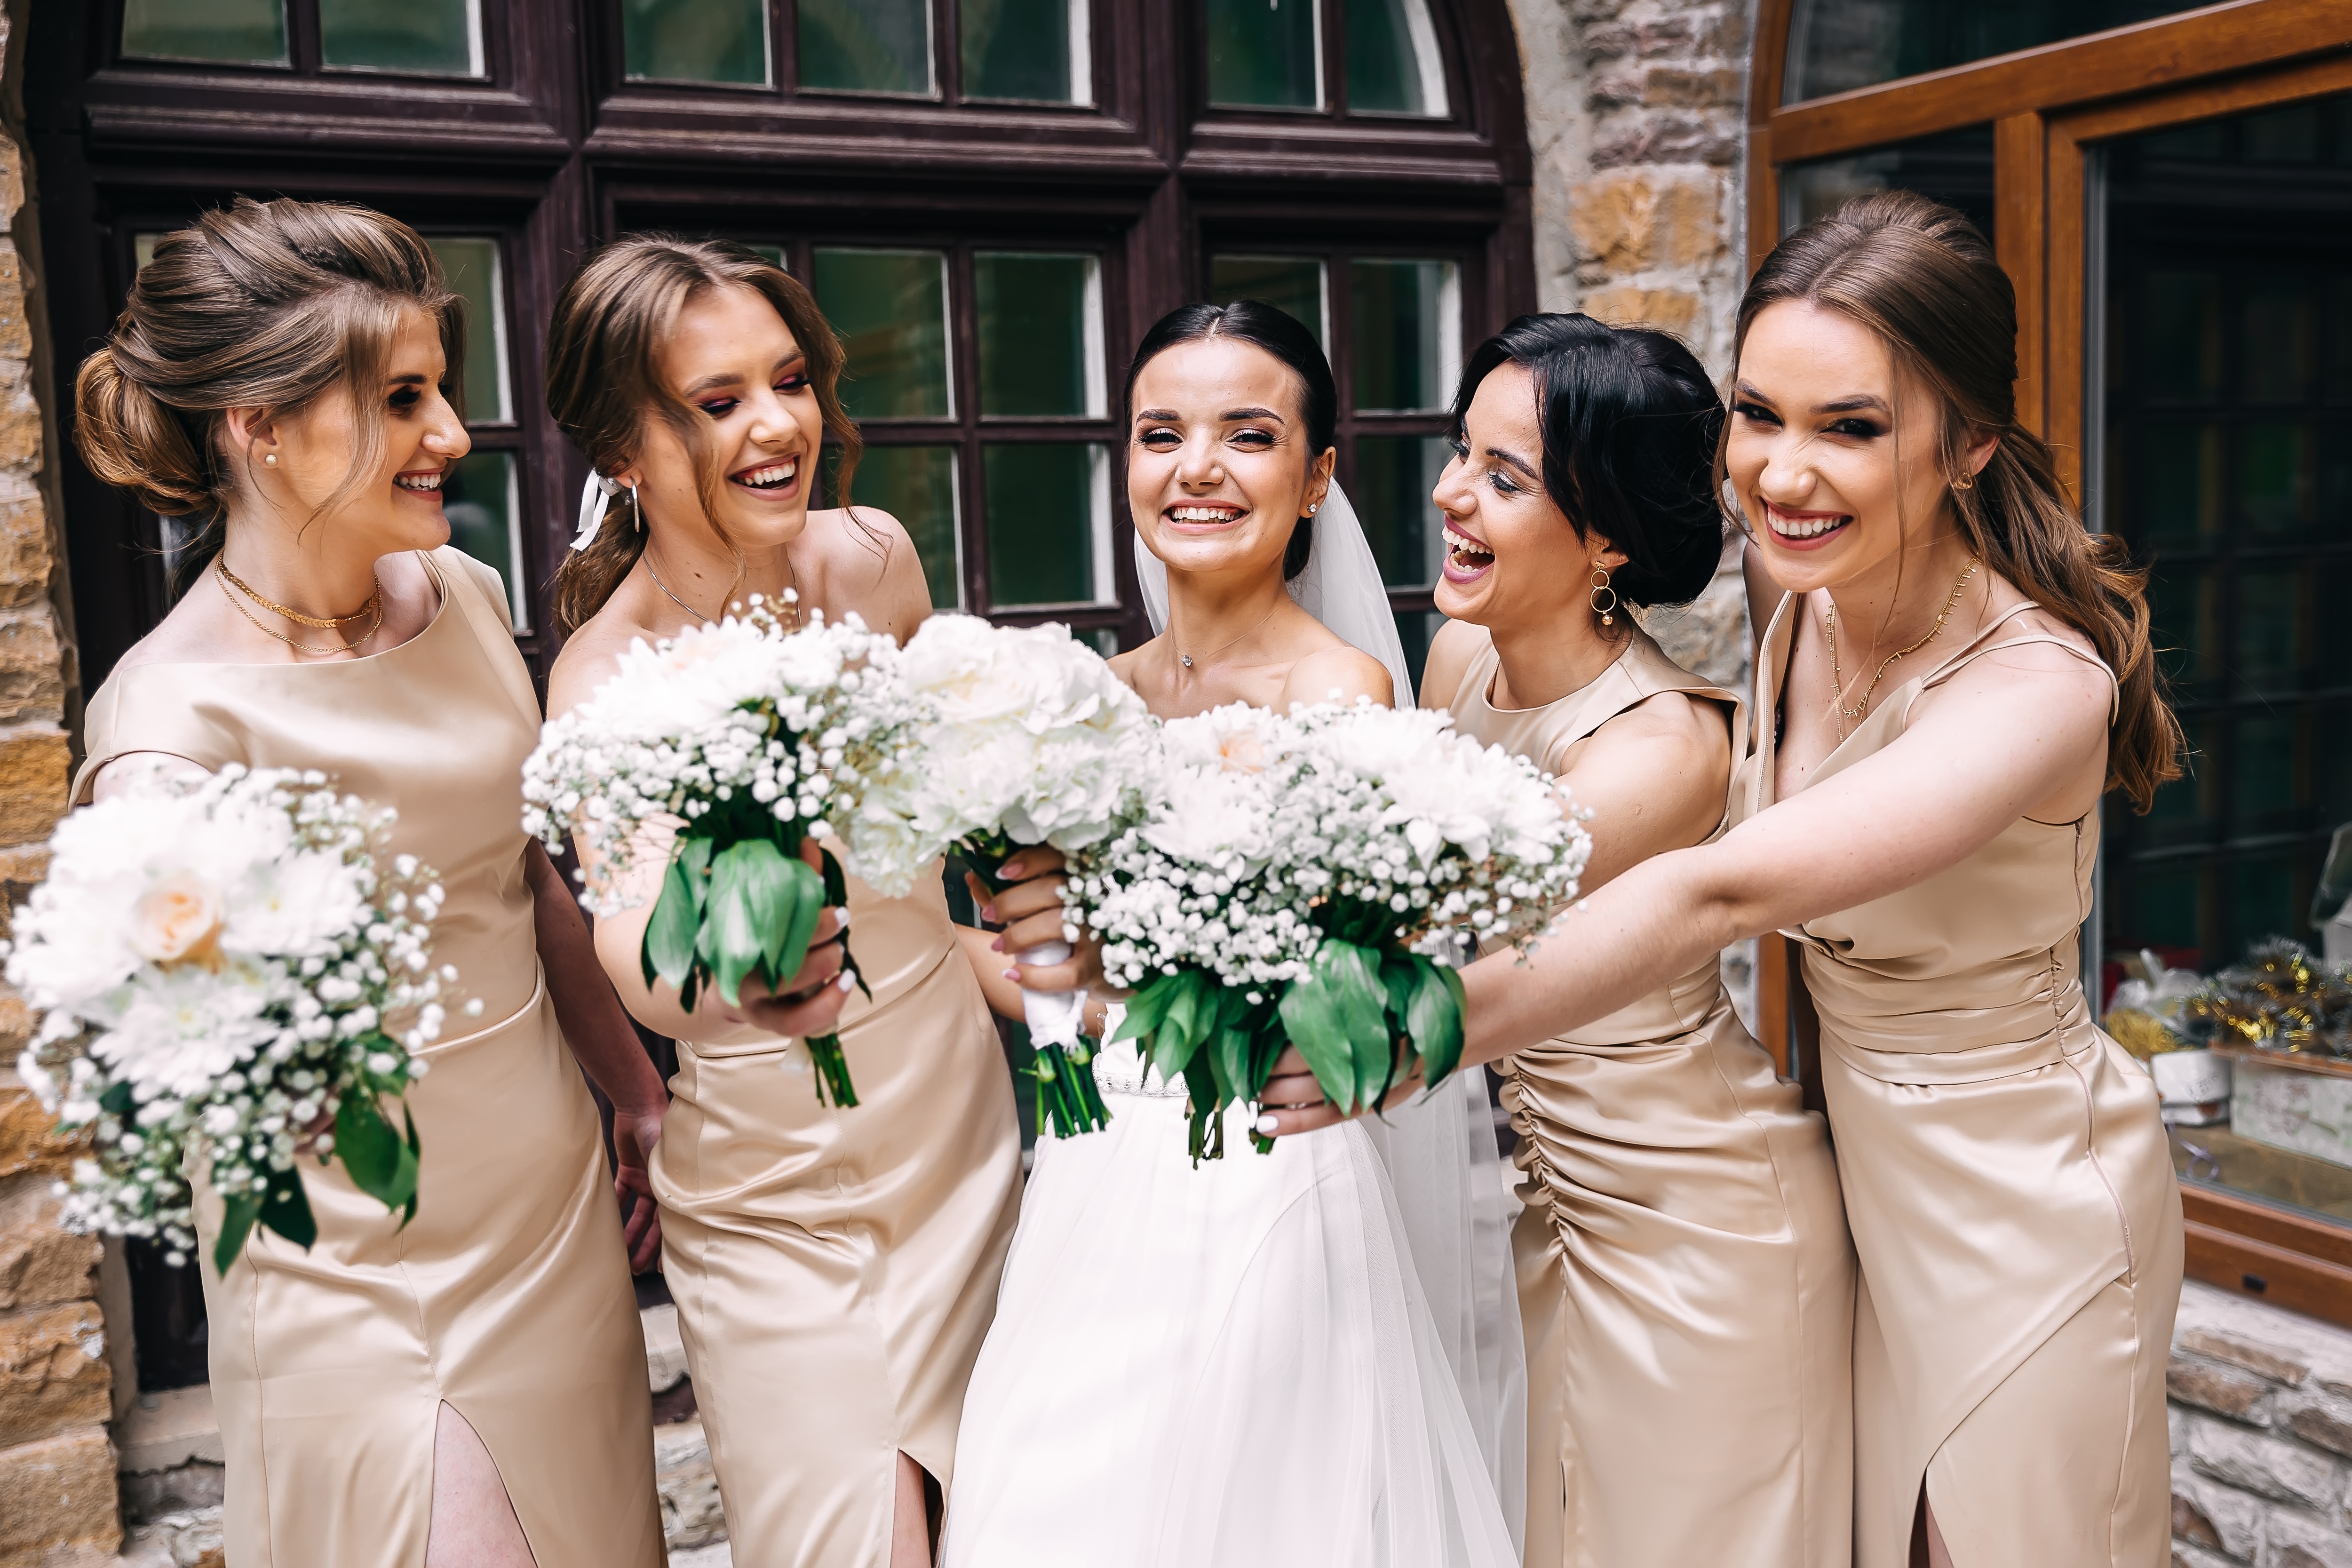 Eine glückliche Hochzeitsgesellschaft posiert für ein Foto | Quelle: Shutterstock